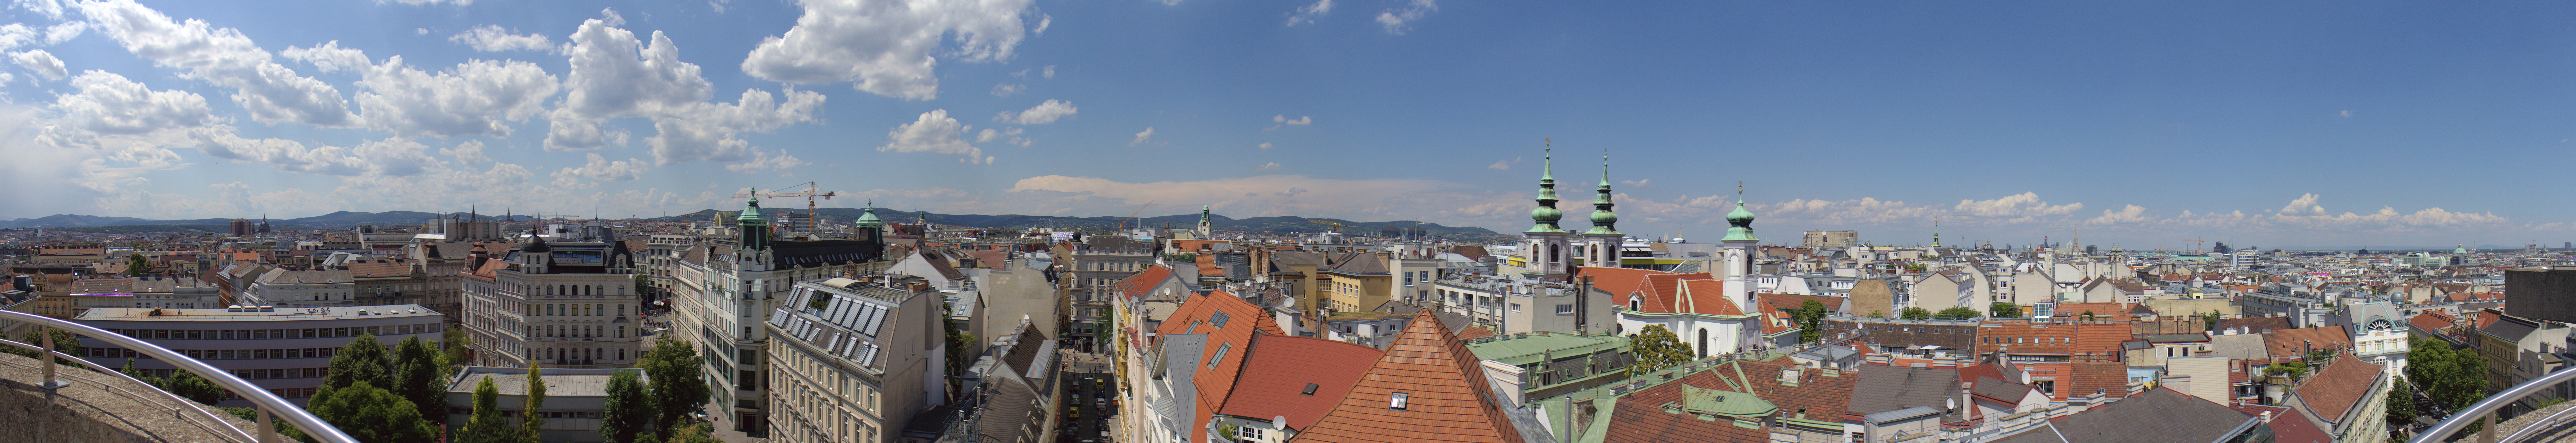 File:Vienna Panorama.jpg - Wikimedia Commons